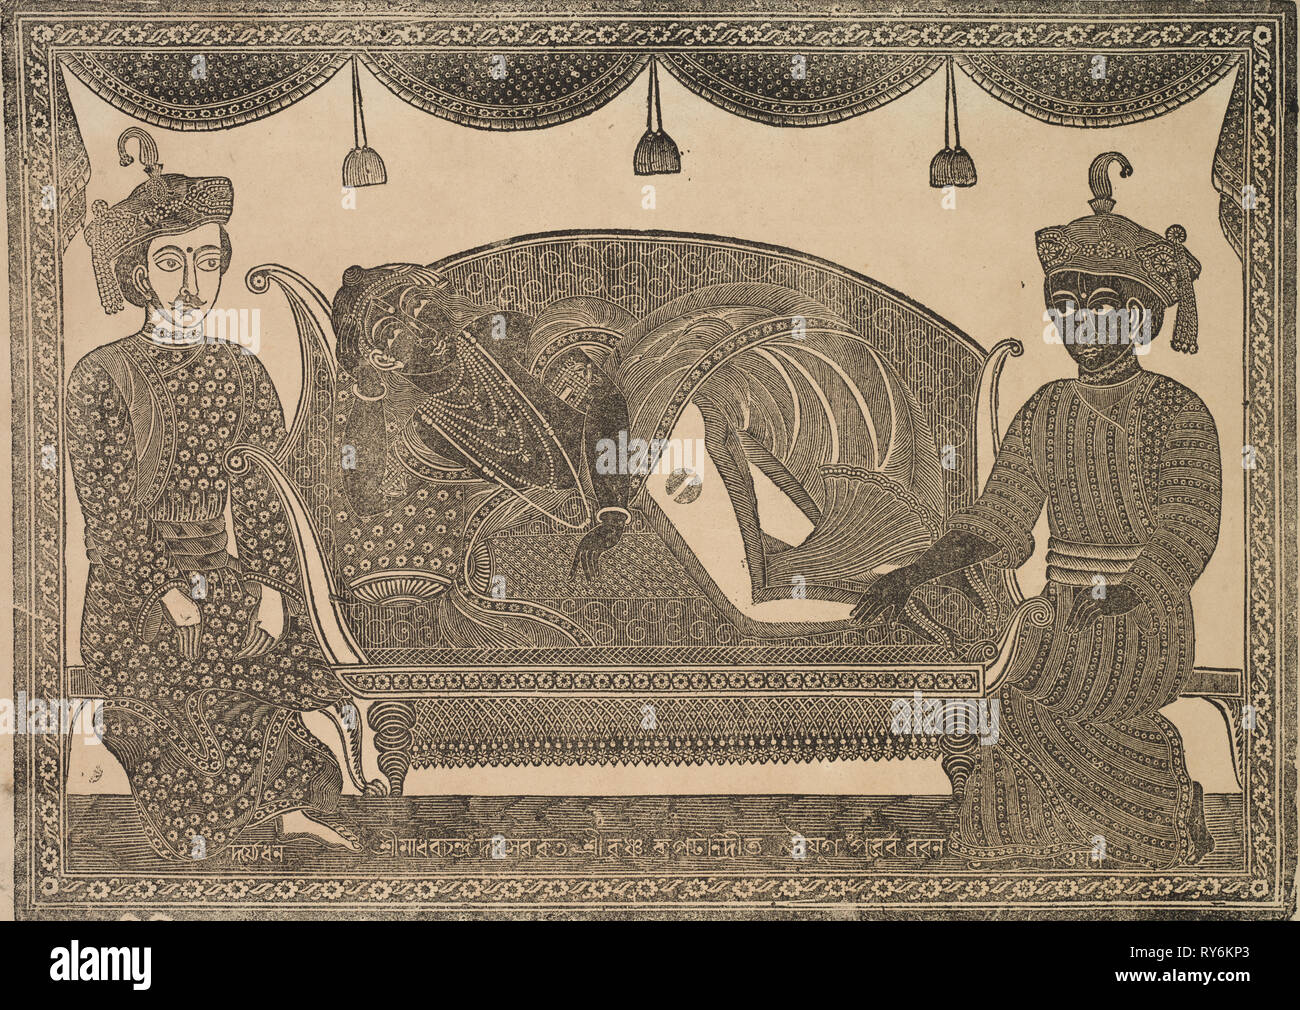 Kalighat Malerei, 1800. Shri Gobinda Chandra Roy. Holzschnitt mit schwarzer Tinte auf Papier; sekundäre Support: 30 x 49,7 cm (11 13/16 x 19 9/16 in.); nur die Malerei: 27,8 x 41,7 cm (10 15/16 x 16 7/16 Stockfoto